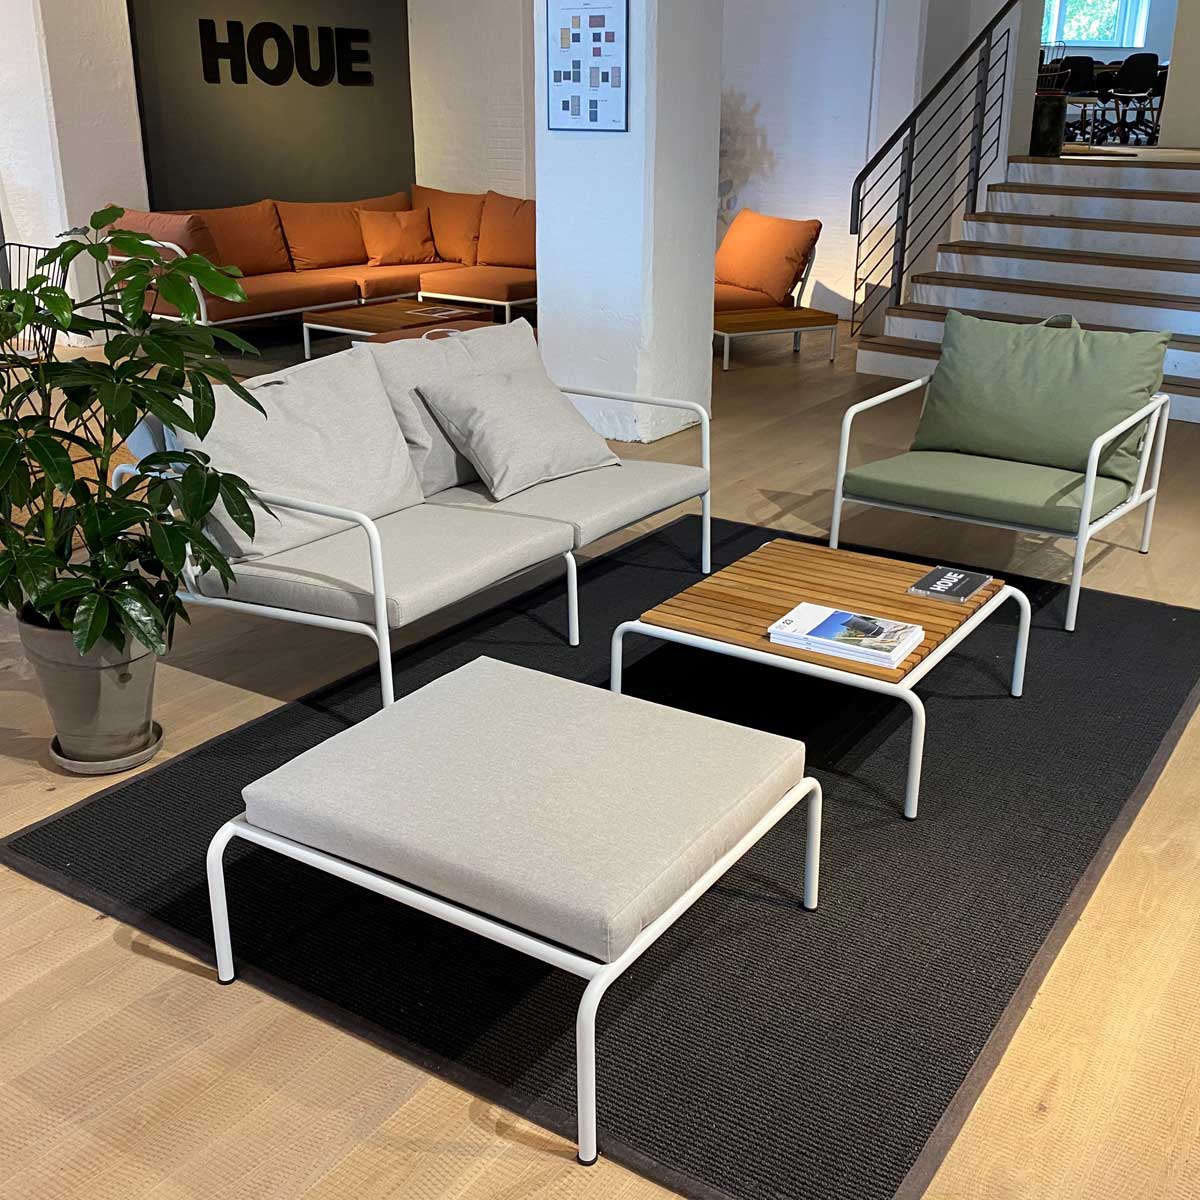 Avon Lounge Möbel von Houe in einer Ausstellung